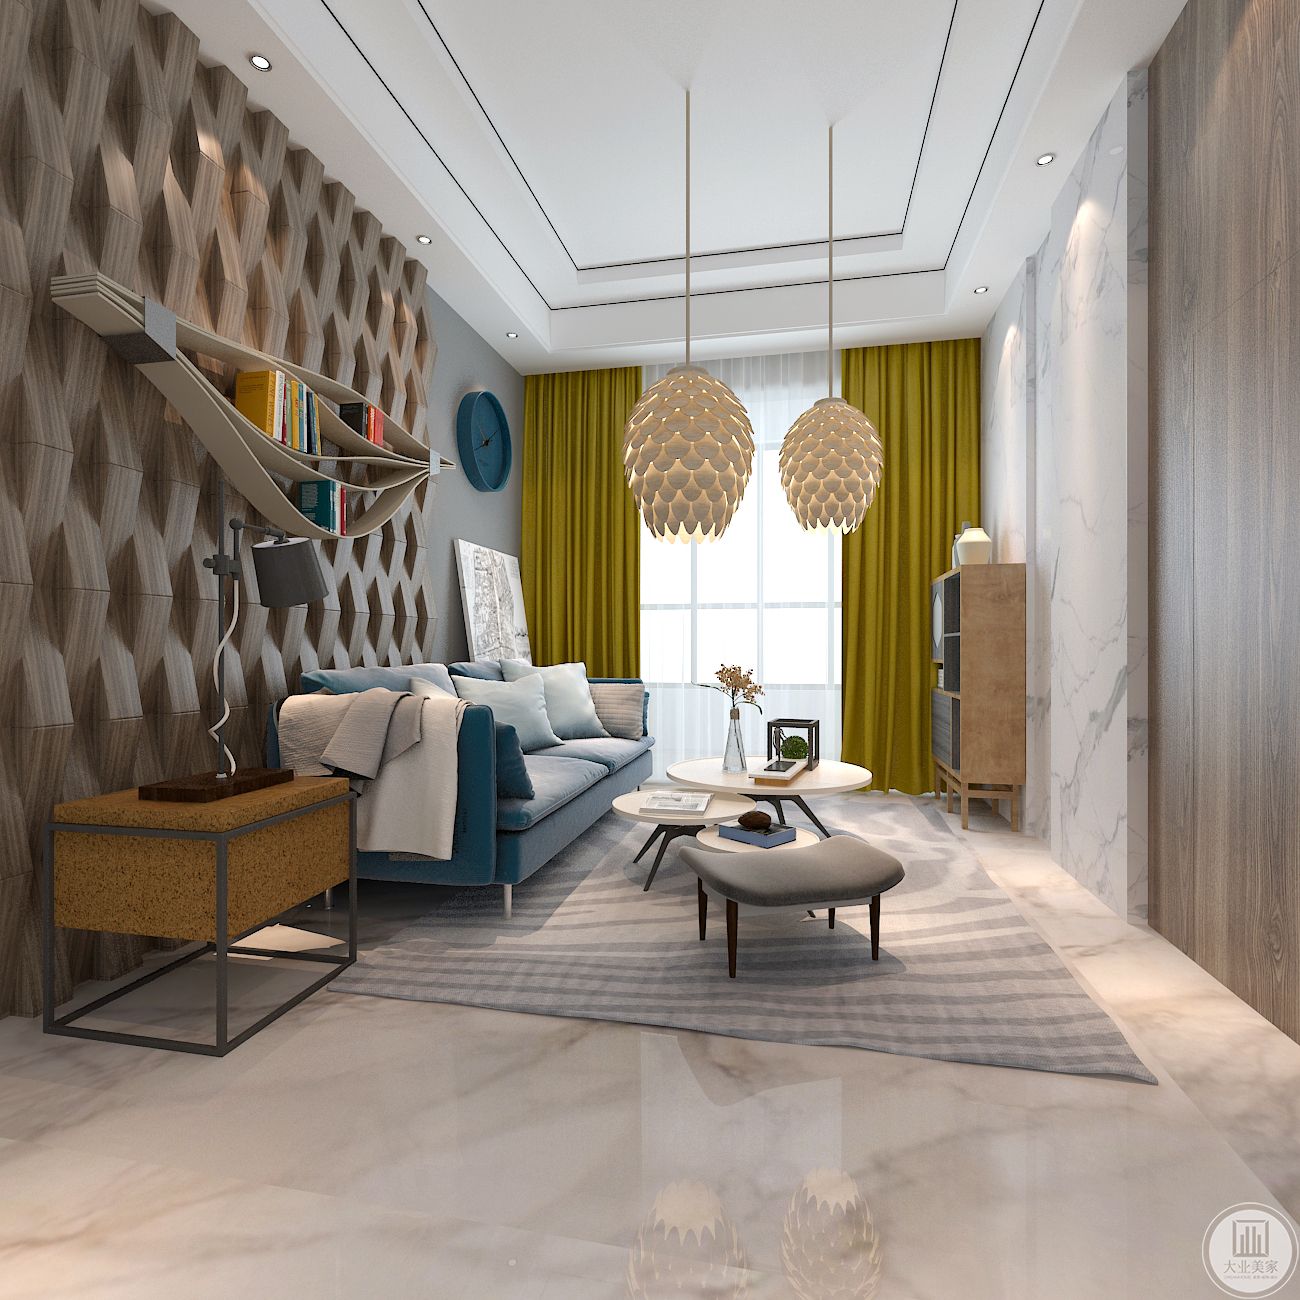 二层起居室-以暖色为主色调，没有过多复杂的空间布局，每处都格外的干净利落,充满美式元素的客厅吊顶让空间显得更加华贵。